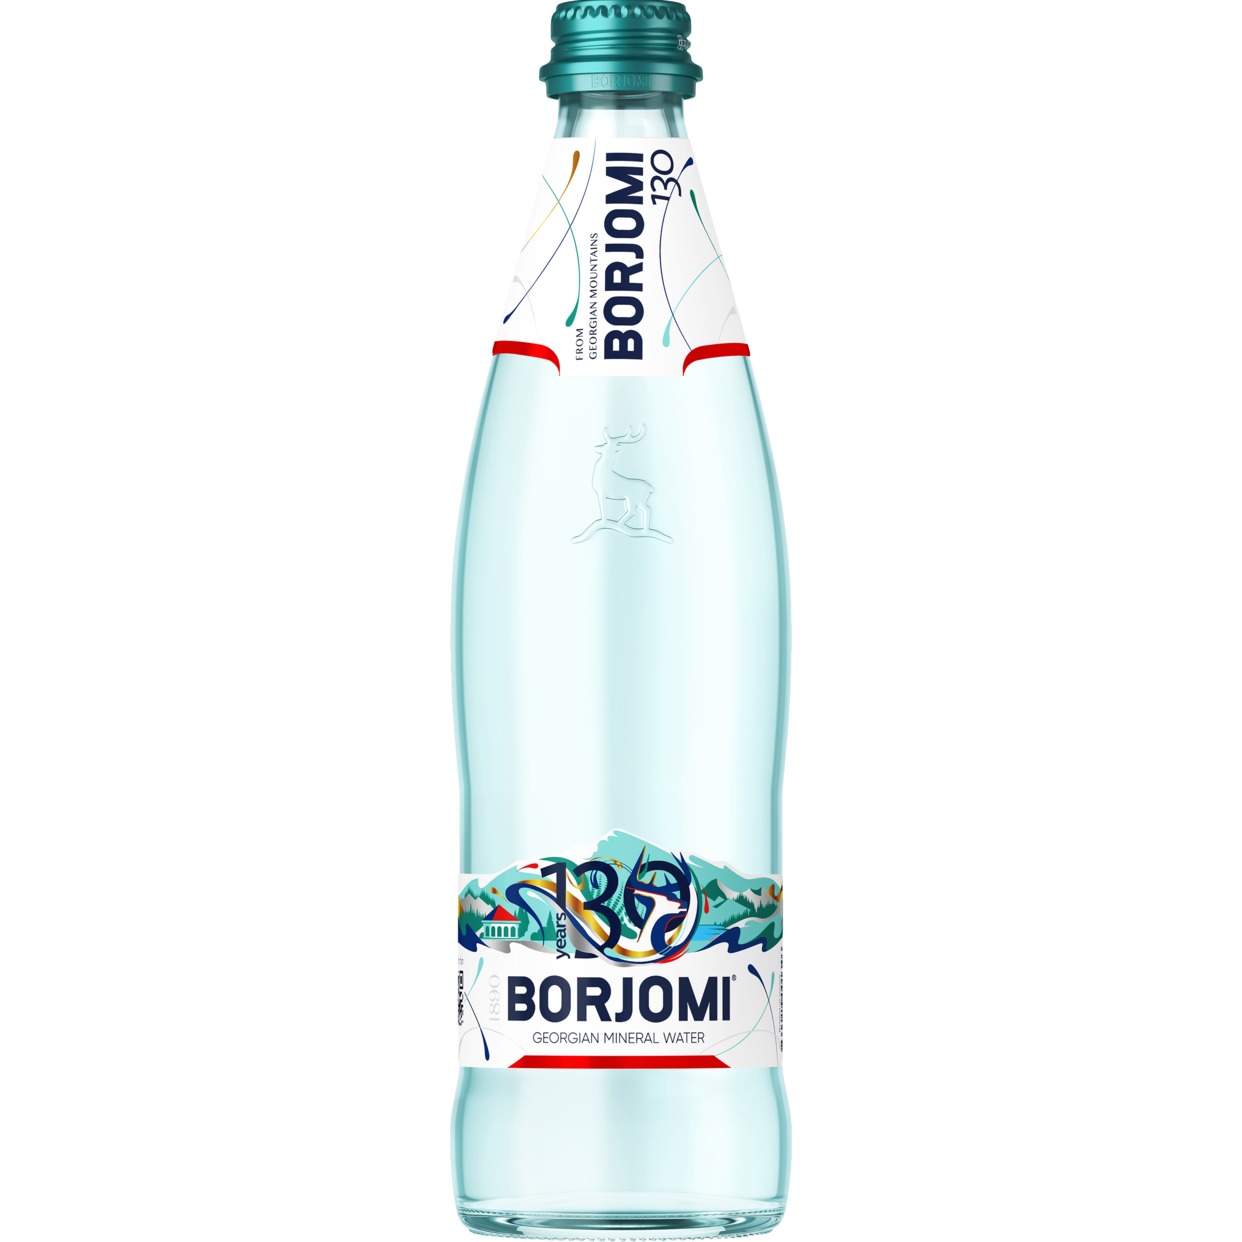 Вода Borjomi, минеральная, газированная, 0,5 л по акции в Пятерочке